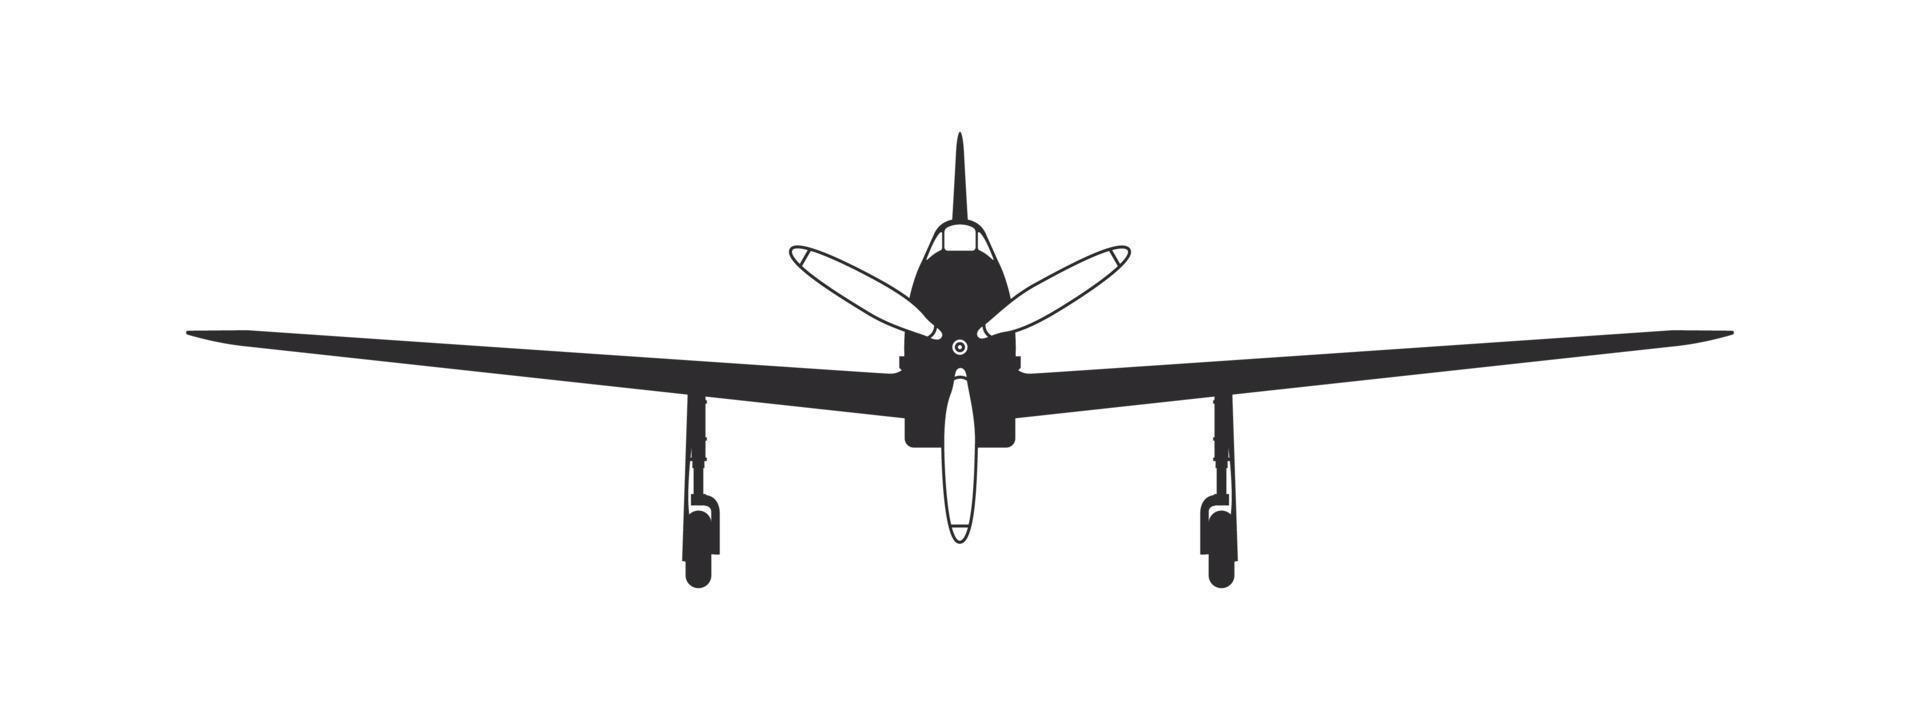 vlak. een sport- propeller vliegtuig. vliegtuig silhouet voorkant visie. vector beeld